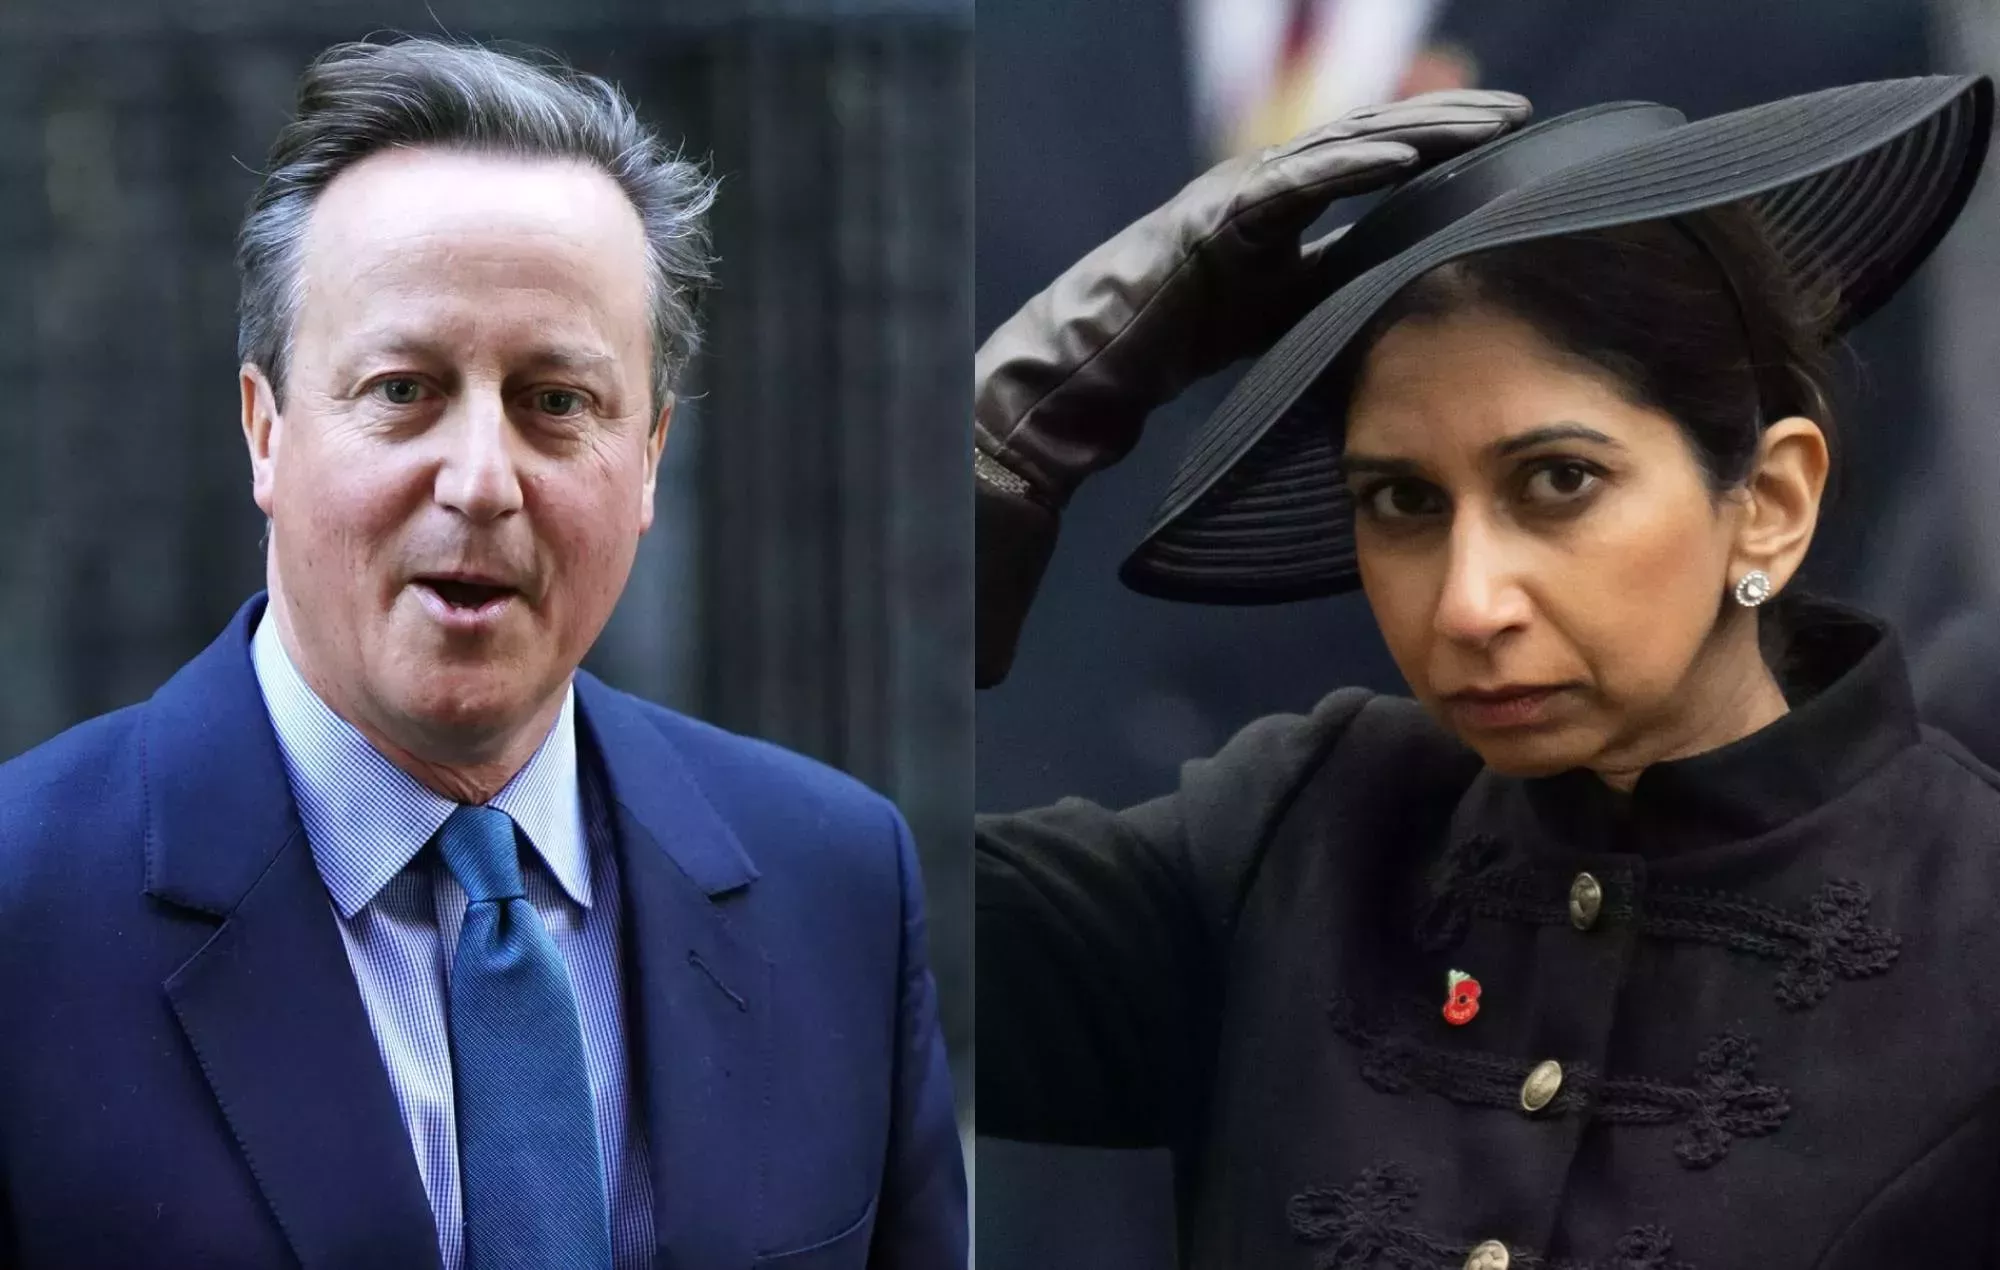 El mundo del espectáculo reacciona ante el regreso de David Cameron al gabinete tras el despido de Suella Braverman